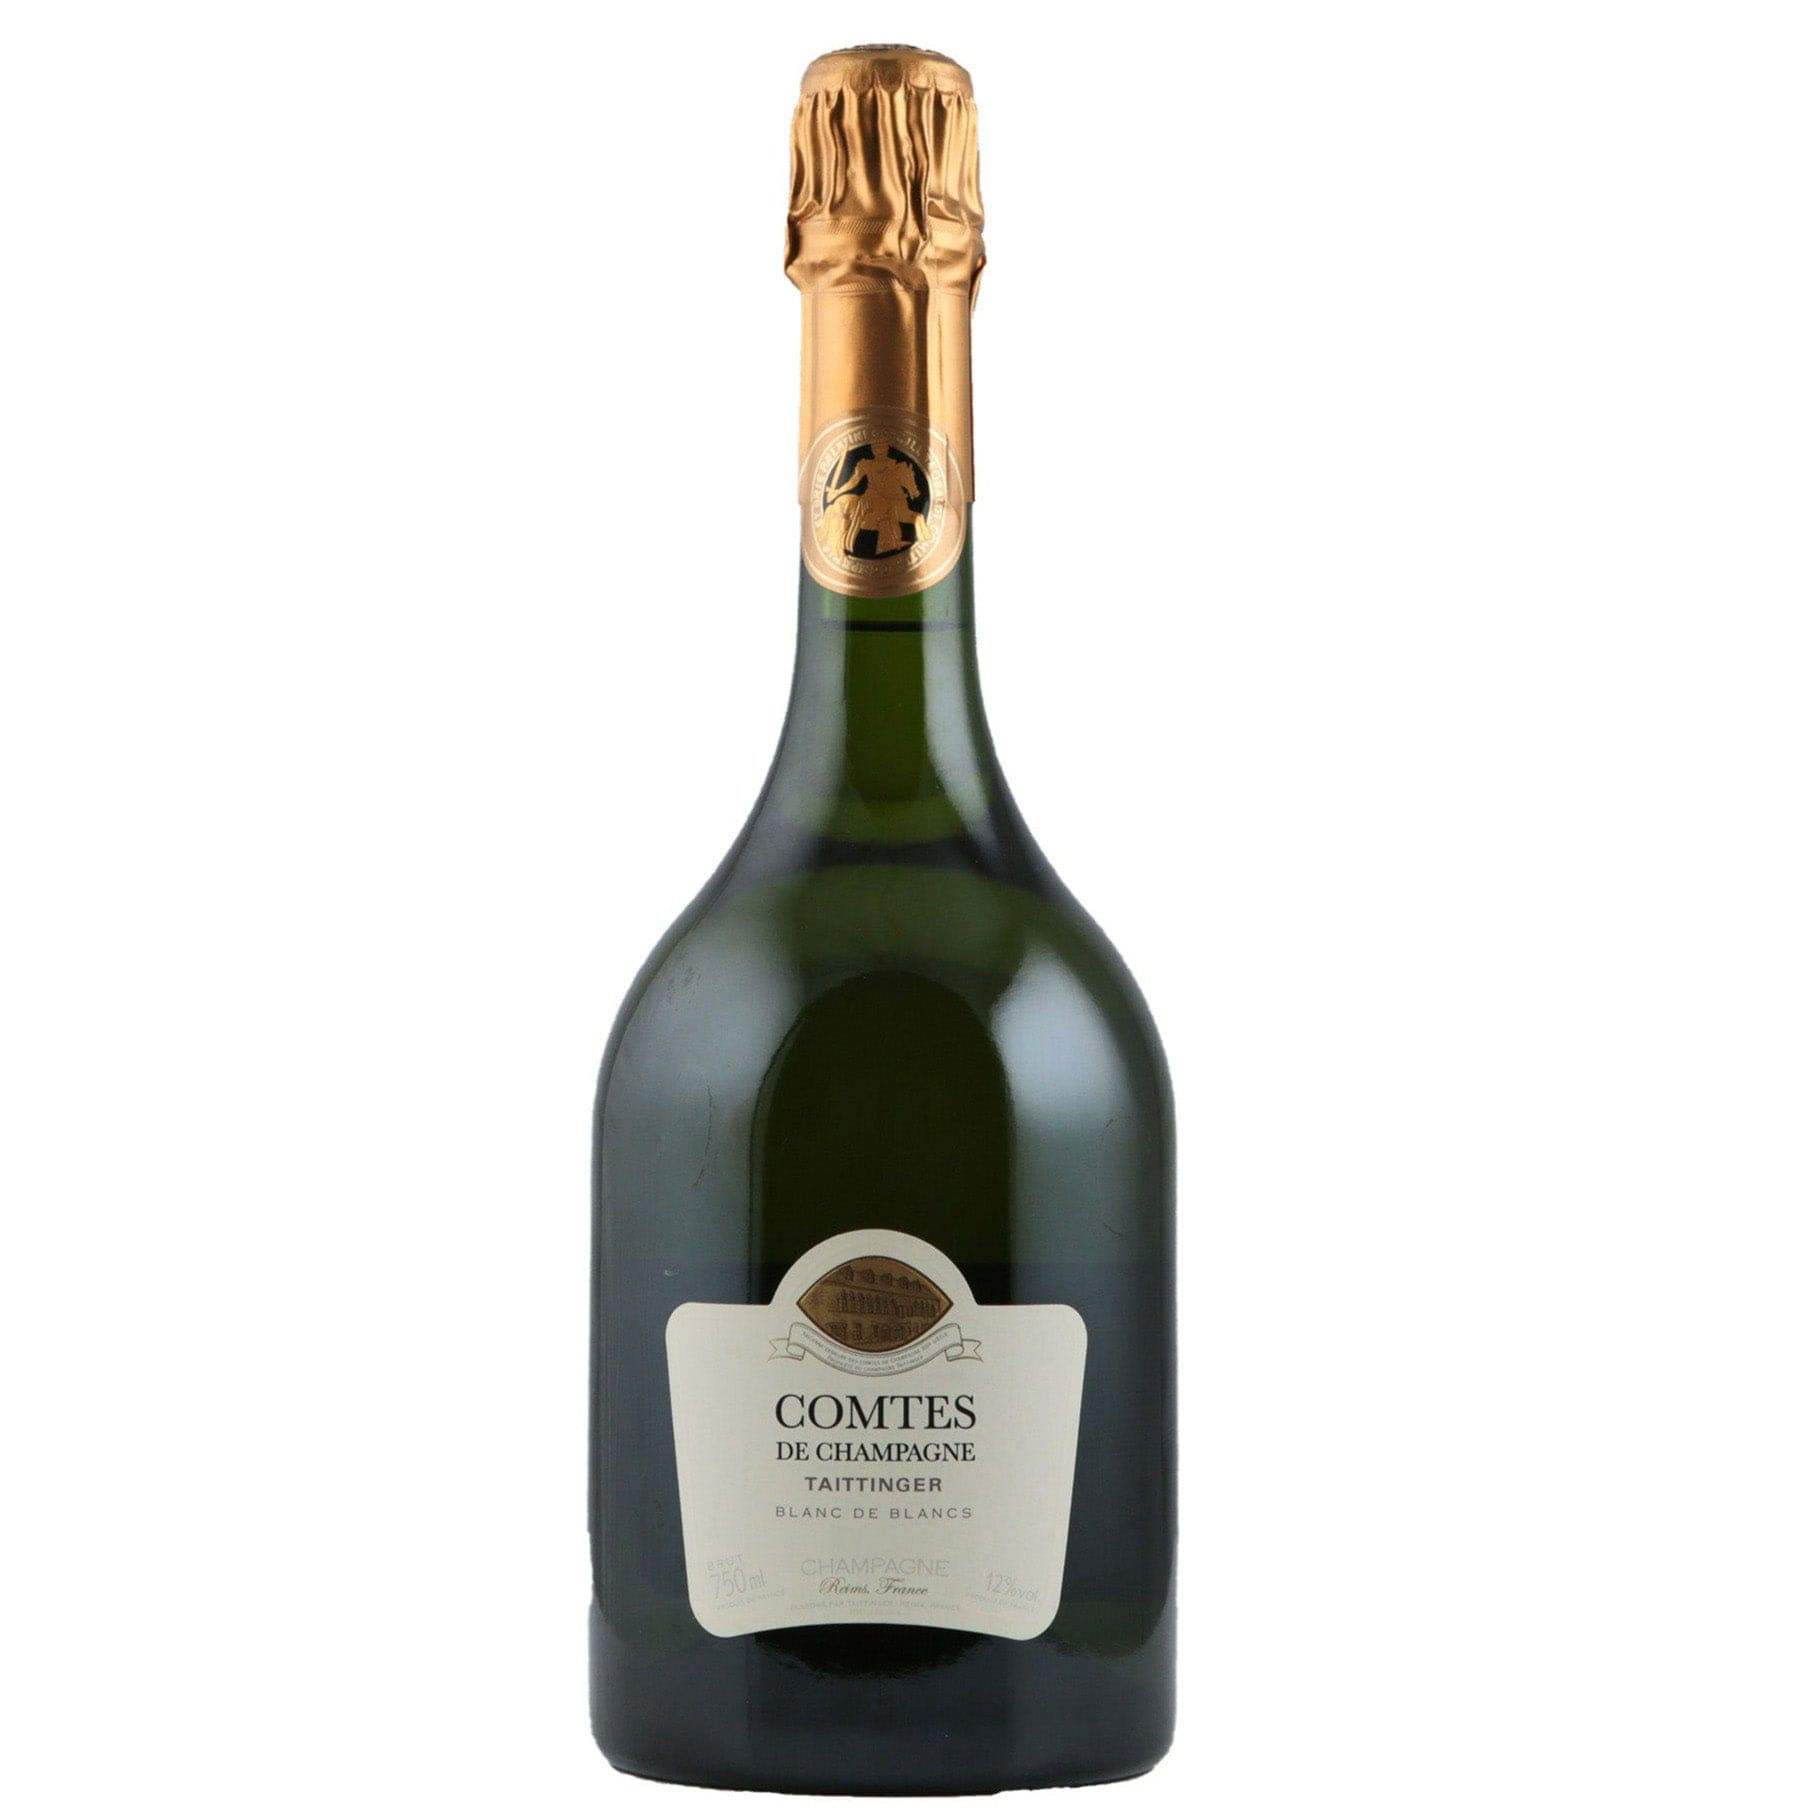 Single bottle of Sparkling wine Taittinger, Comte de Champagne Blanc de Blancs, Champagne, 1989 100% Chardonnay